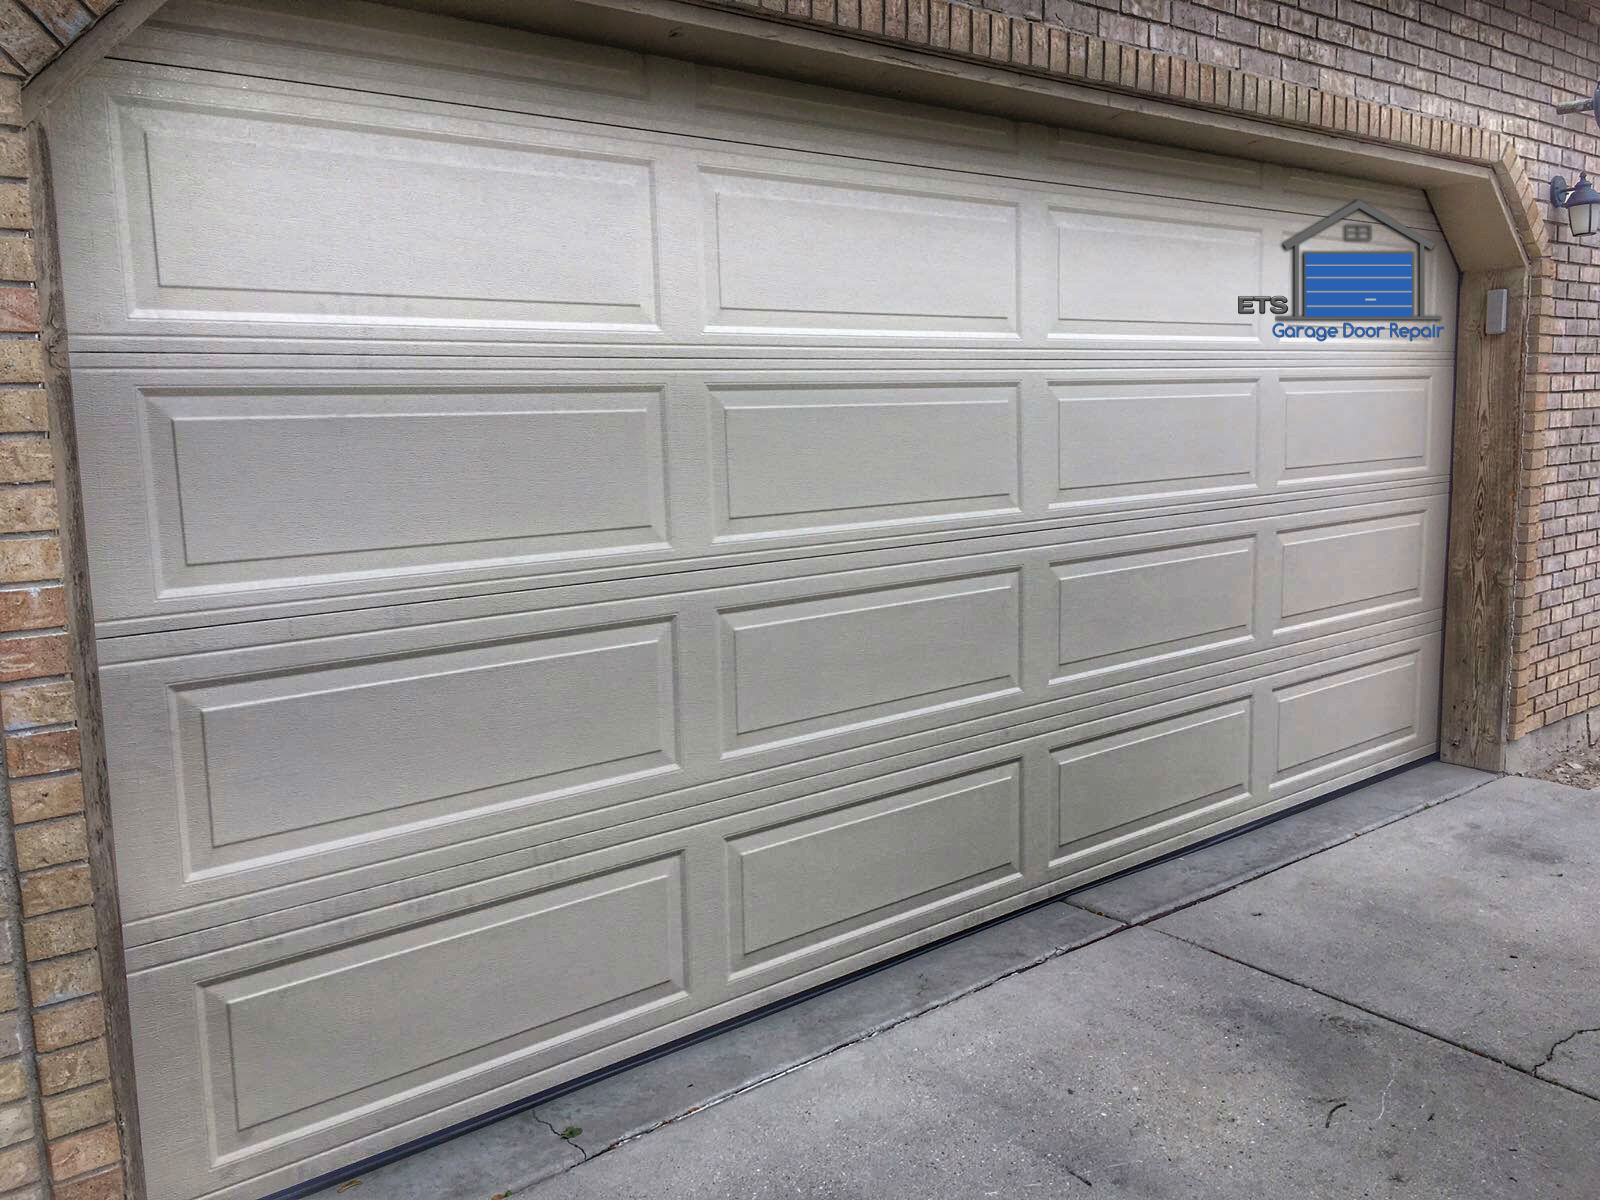 ETS Garage Door Repair Of Newberg- Garage Door Repair & Installation Services4